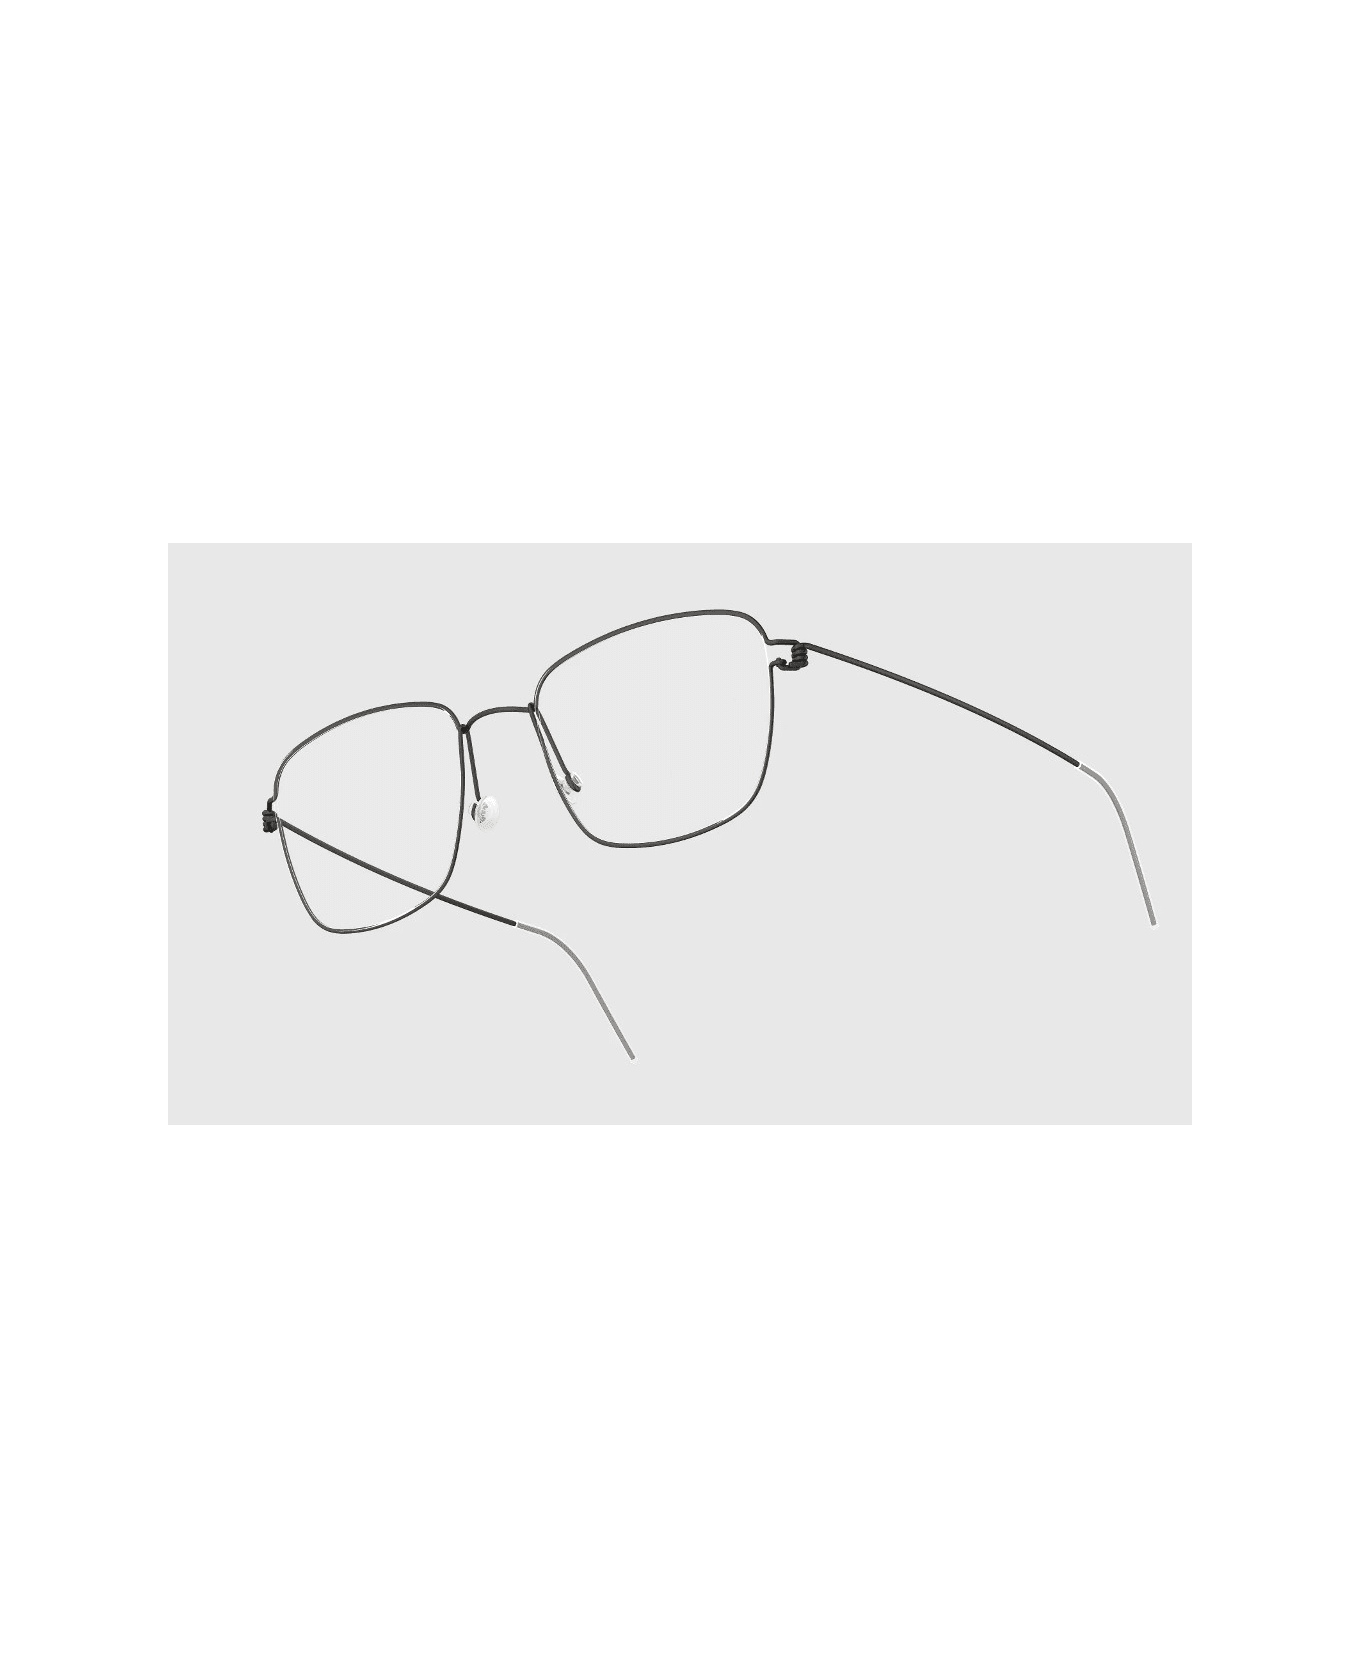 LINDBERG Pablo U9 Glasses アイウェア